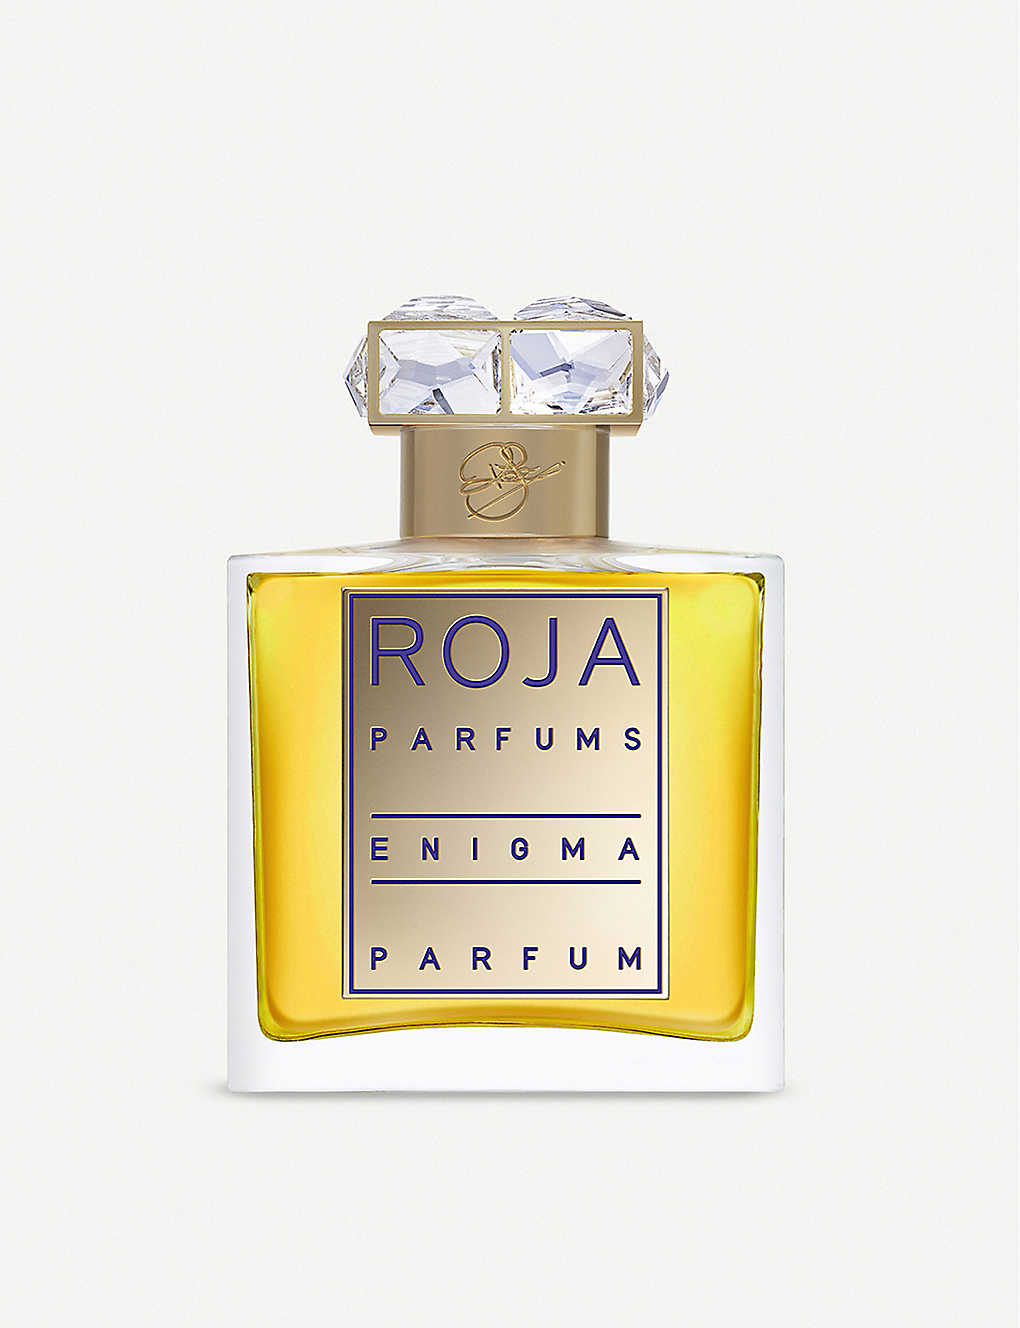 Roja Parfums Enigma Parfum Pour Femme 50ml